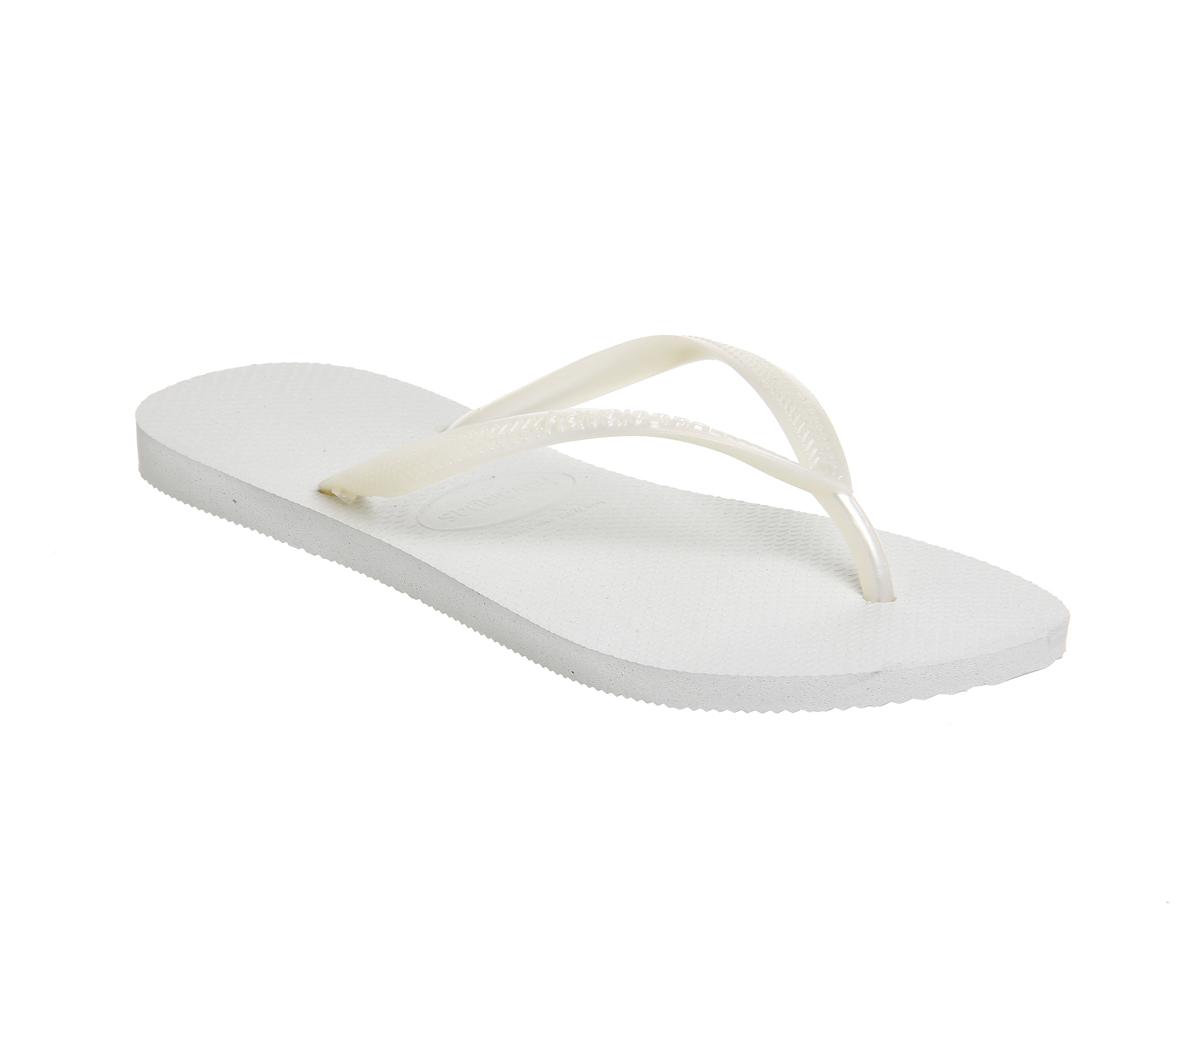 Havaianas Slim Flip Flop White - Sandals